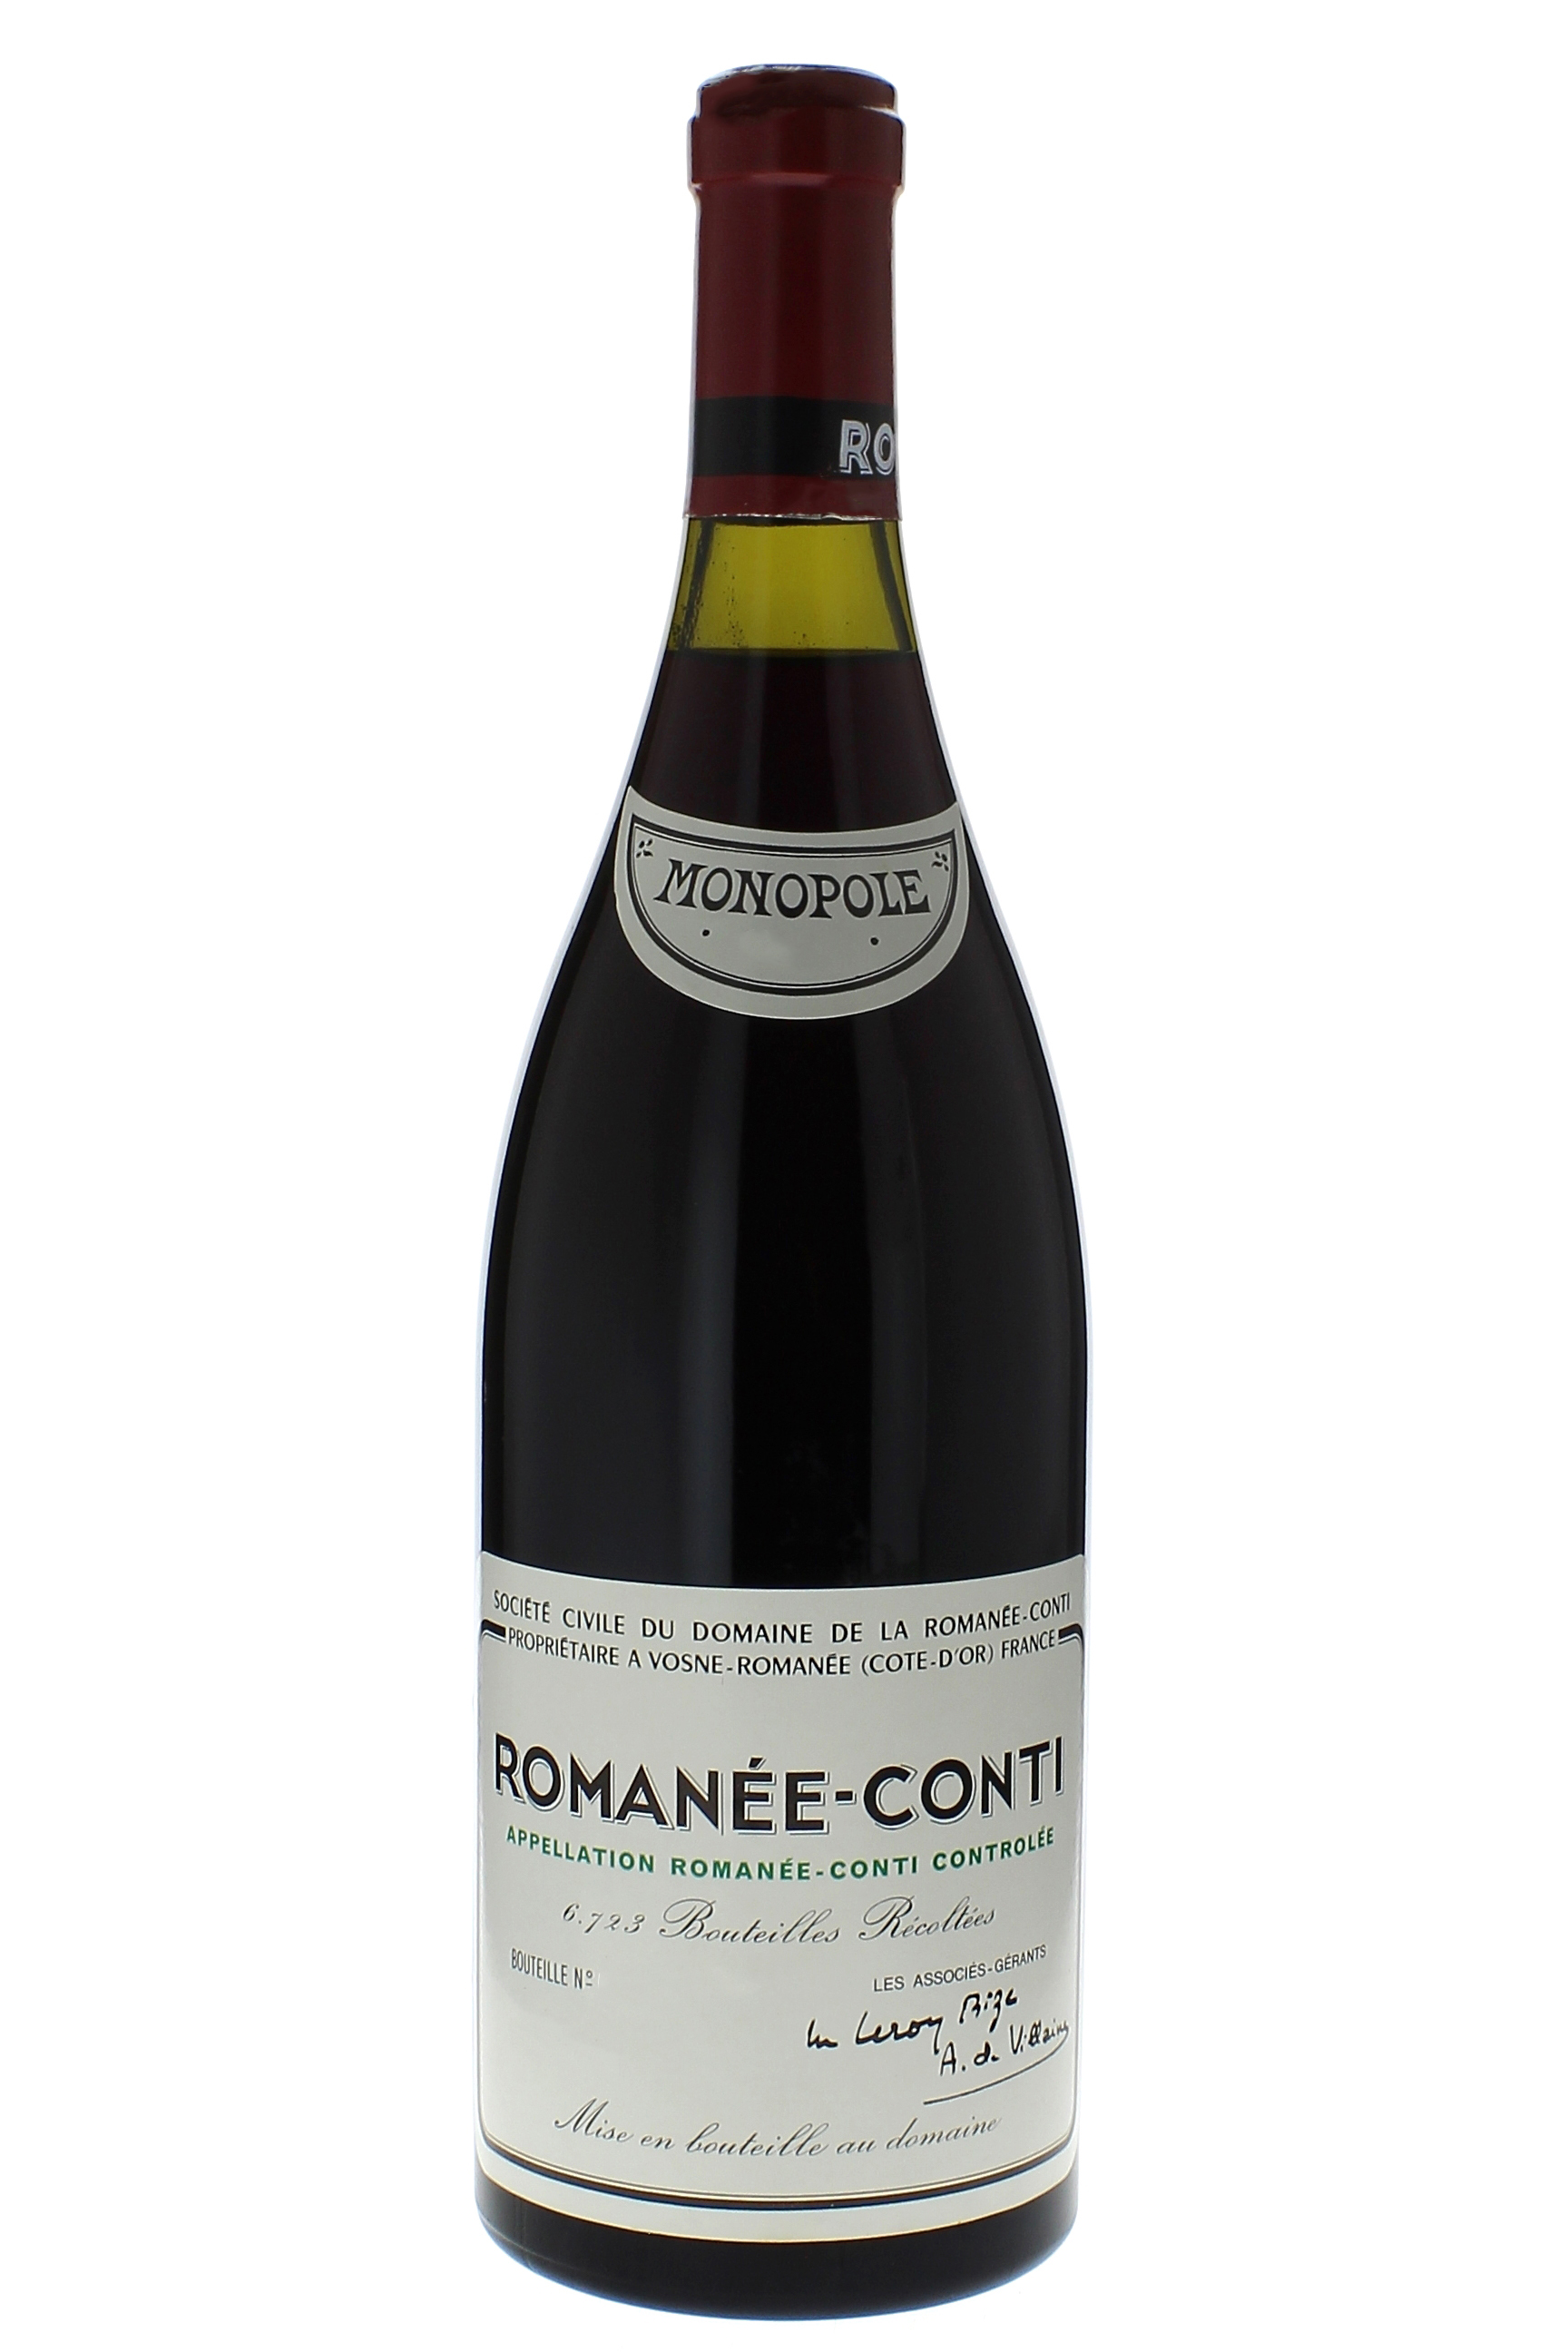 Romane conti grand cru 2013 Domaine ROMANEE CONTI, Bourgogne rouge